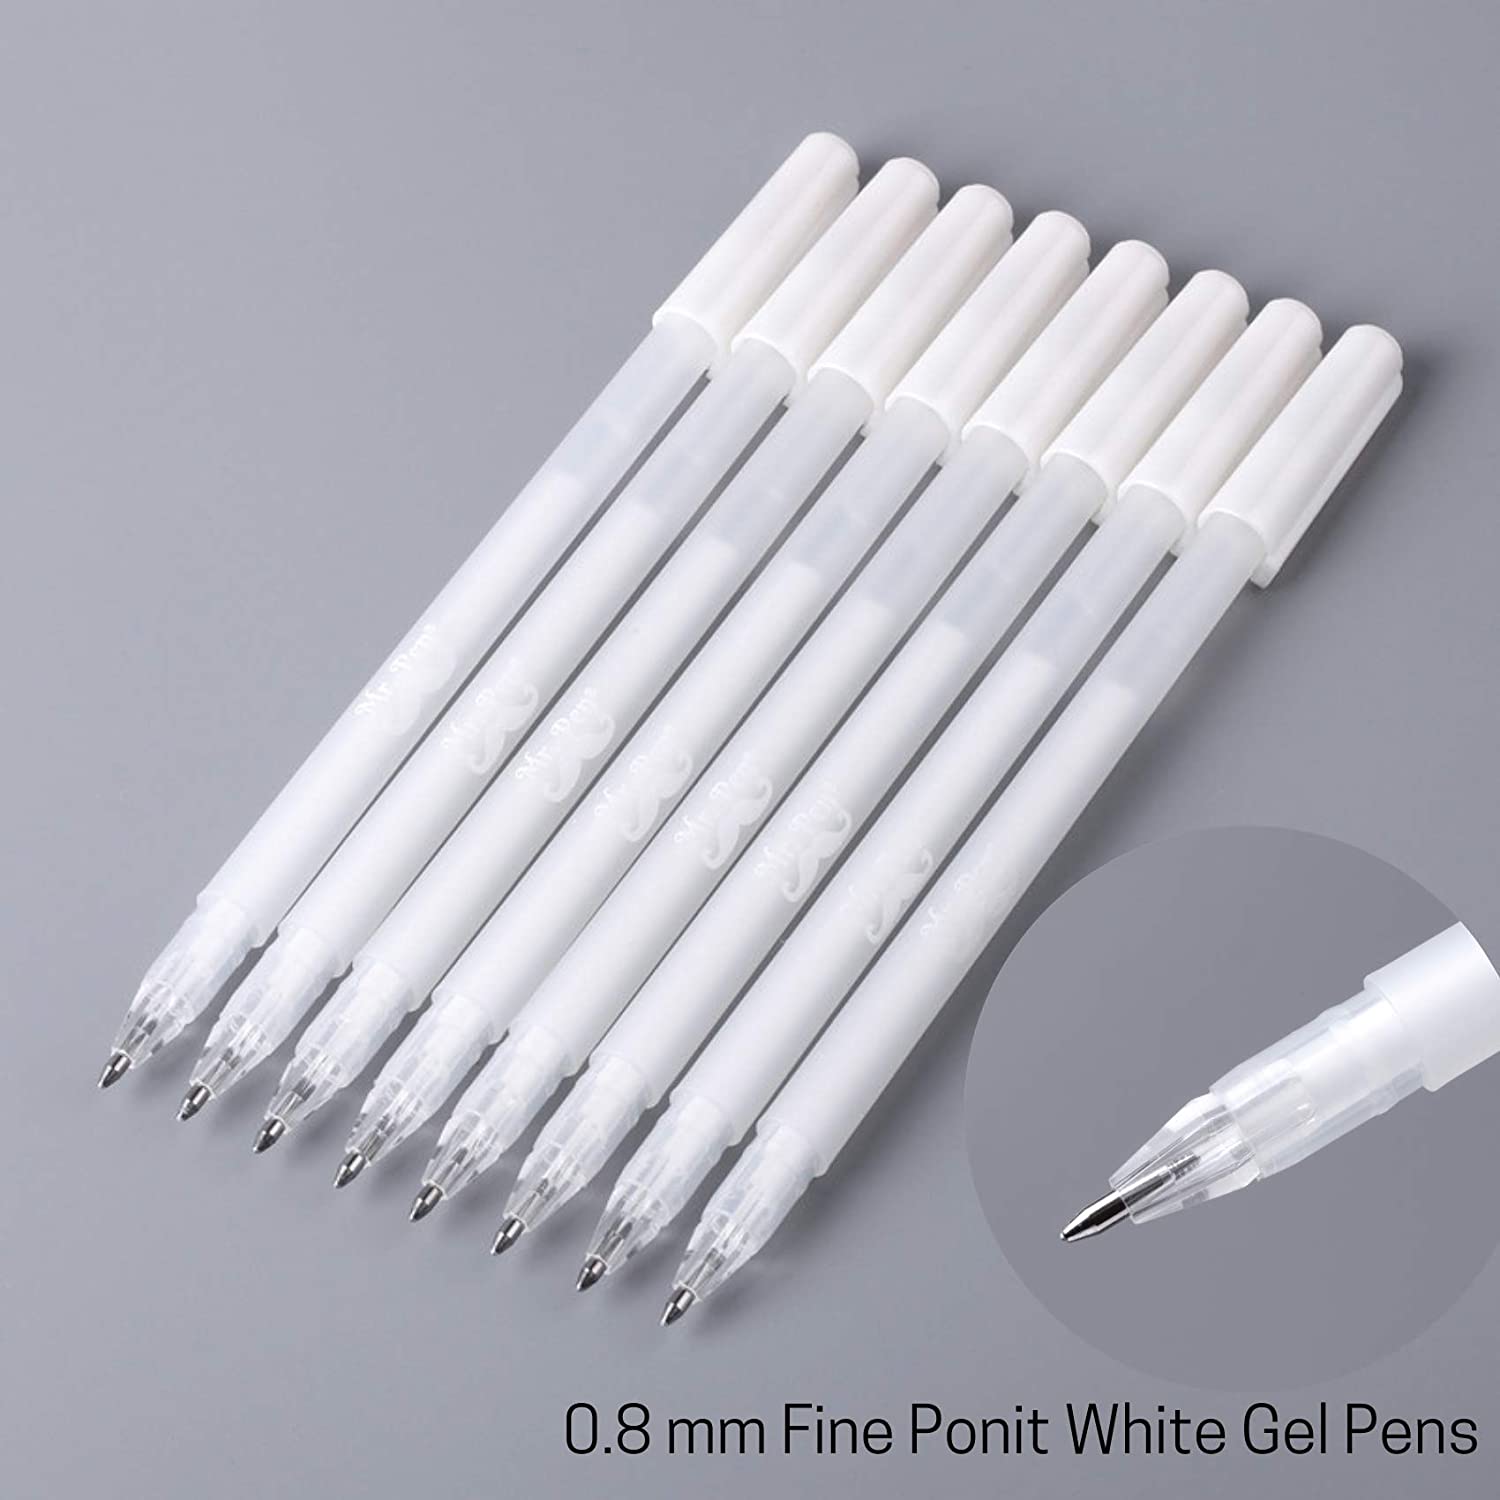 Mr. Pen- White Pens, 8 Pack